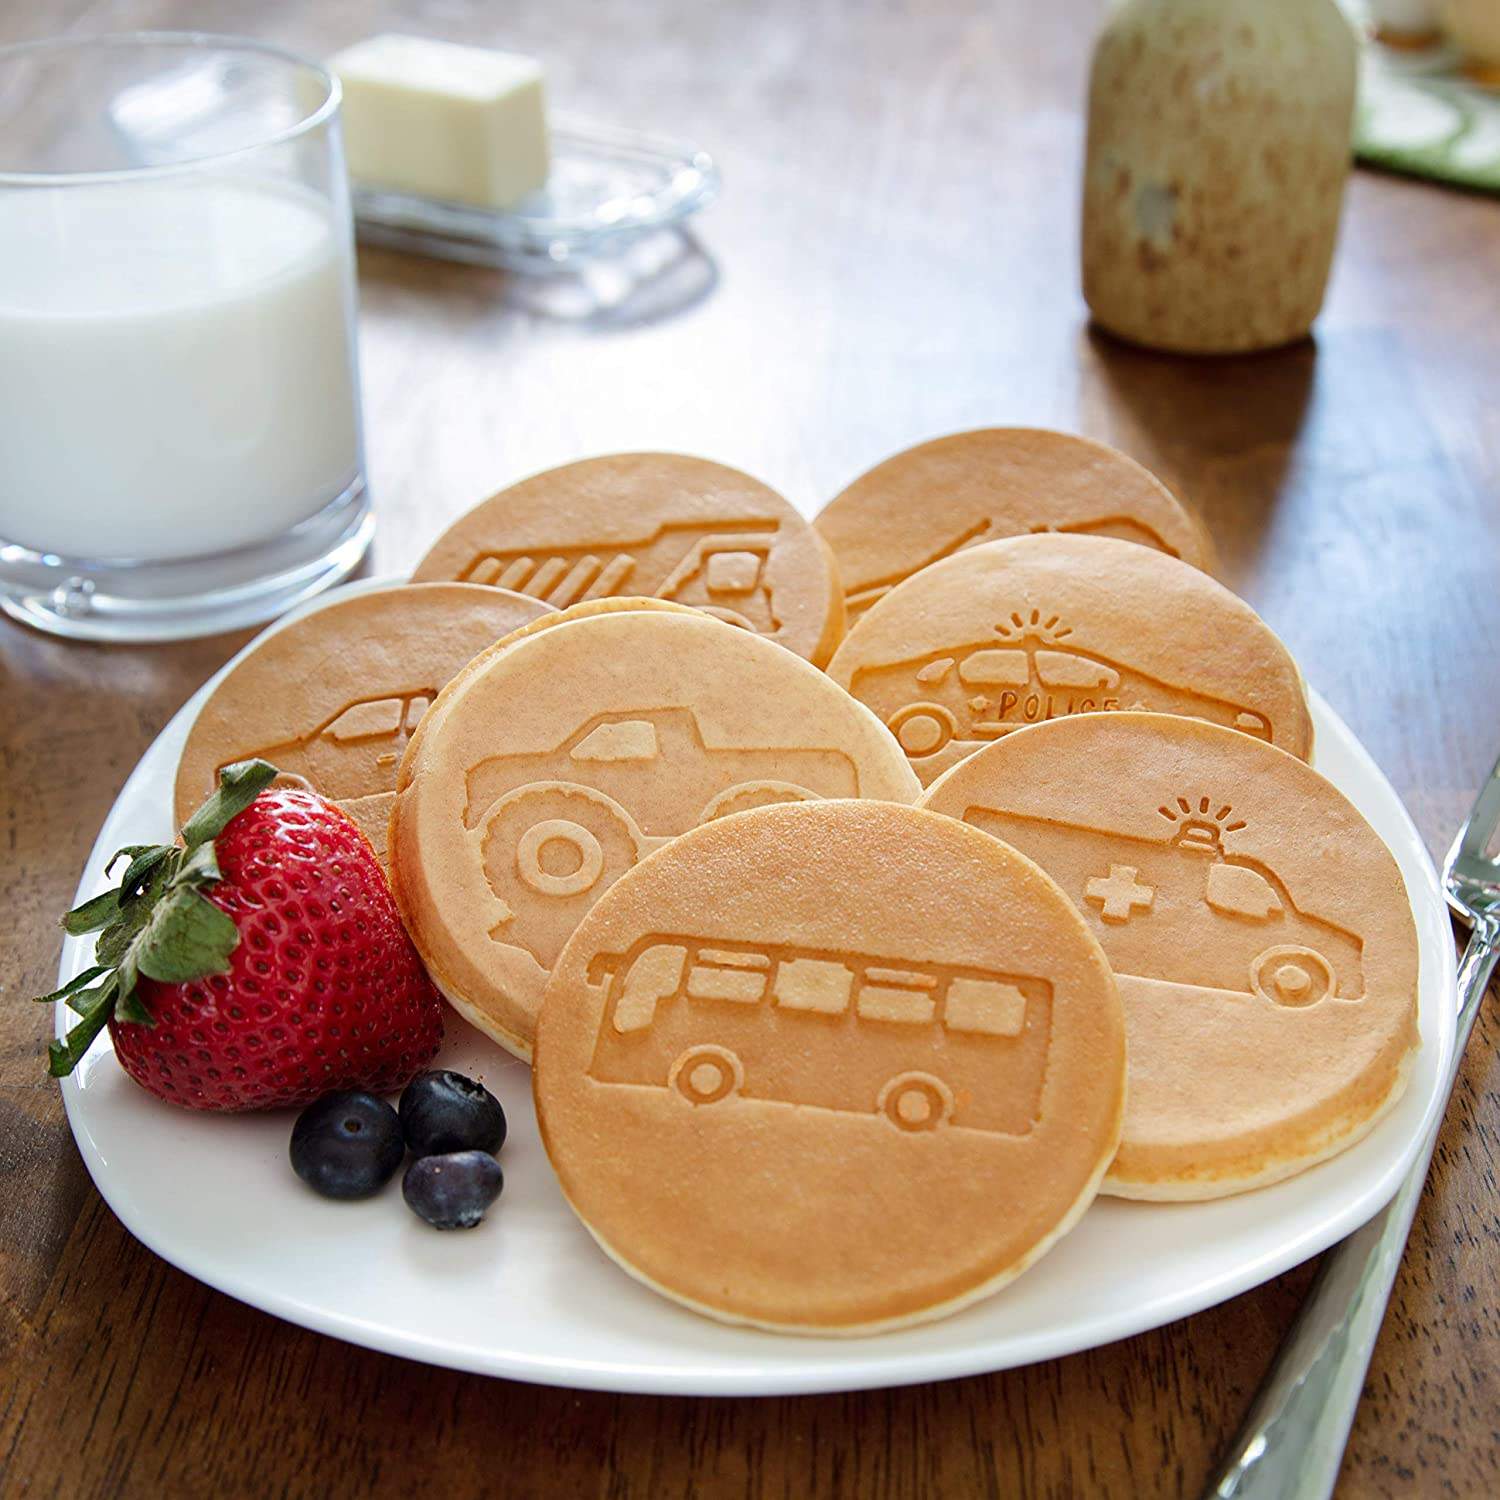 Pancake Molds for Kids - Pancake Pan for Kids - Mini Pancakes Maker Kids  Pancake